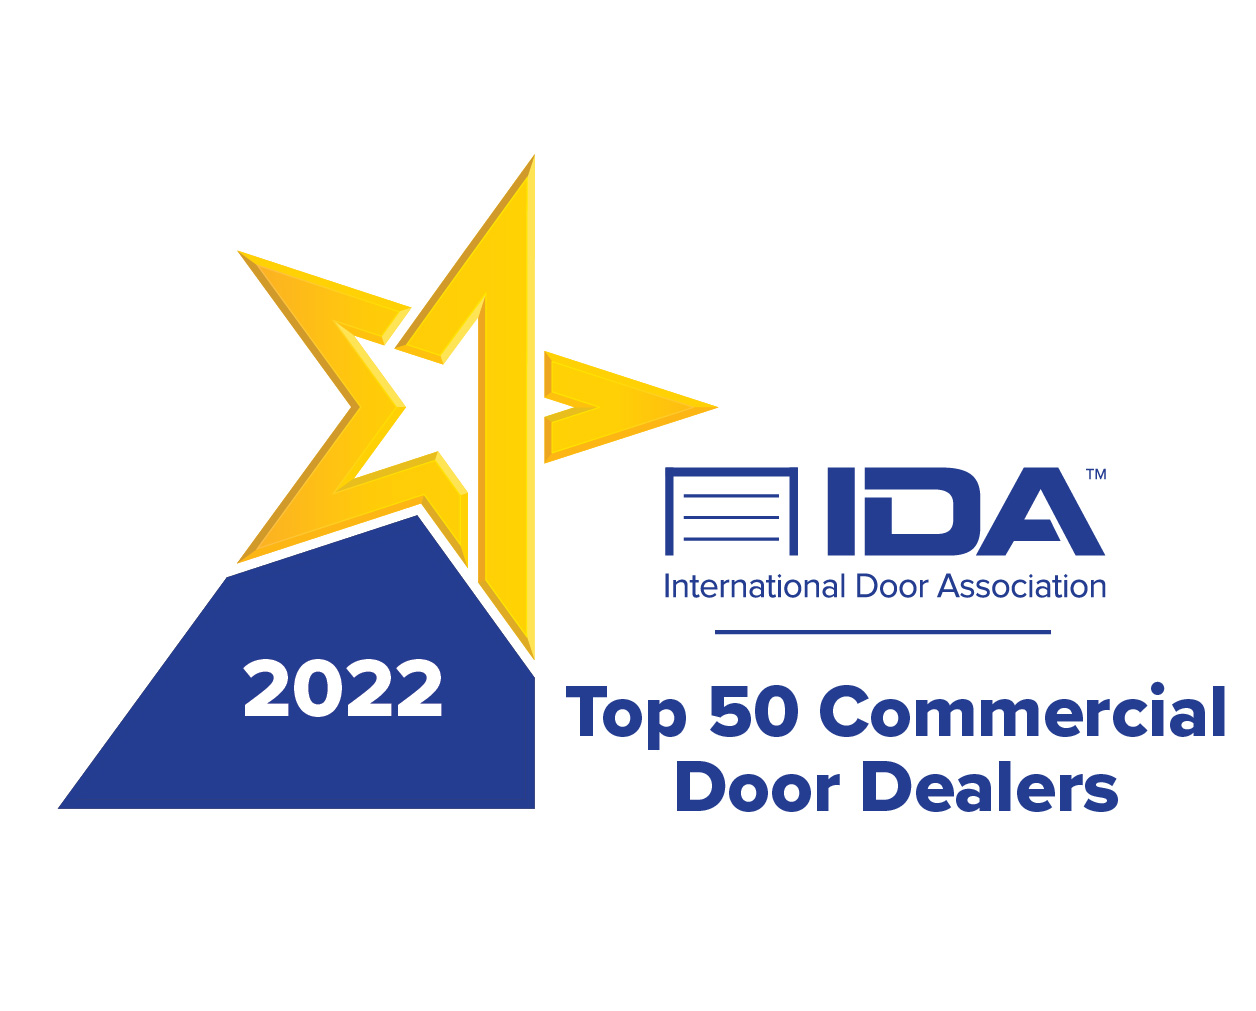 IDA Top 50 Commercial Door Dealers